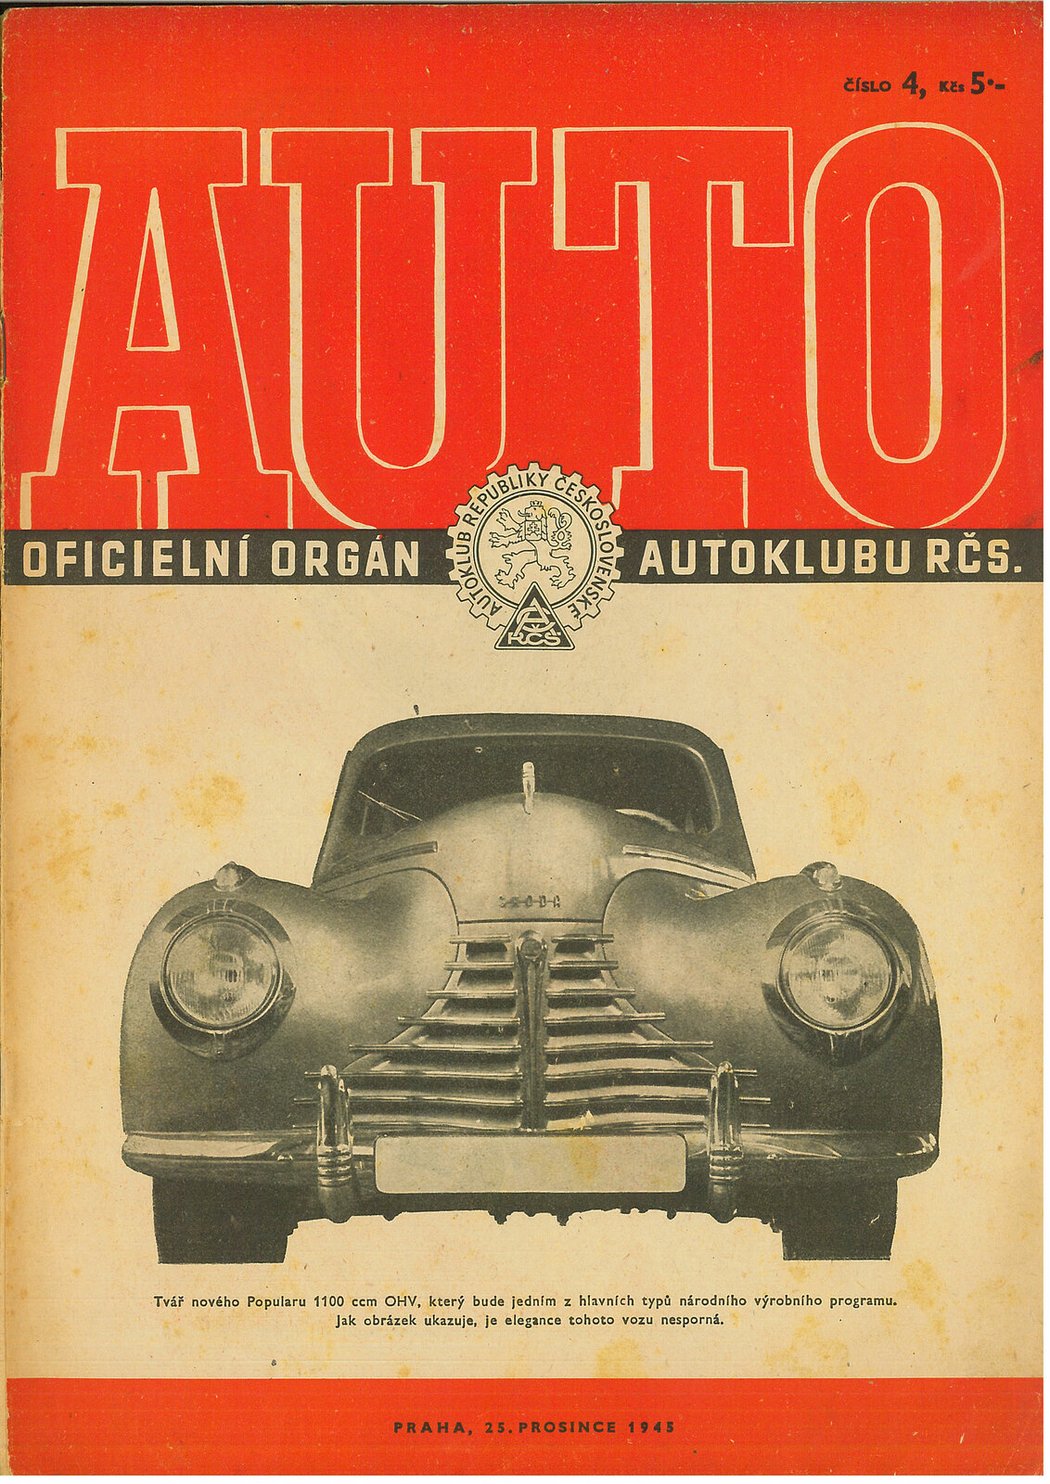 V premiérovém ročníku Světa motorů si Škoda 1101 „Tudor“ dvakrát přivlastnila titulní stranu. Obálka technického vydání časopisu Auto, našeho přímého předchůdce, ji v prosinci 1945 představila jako absolutní novinku.